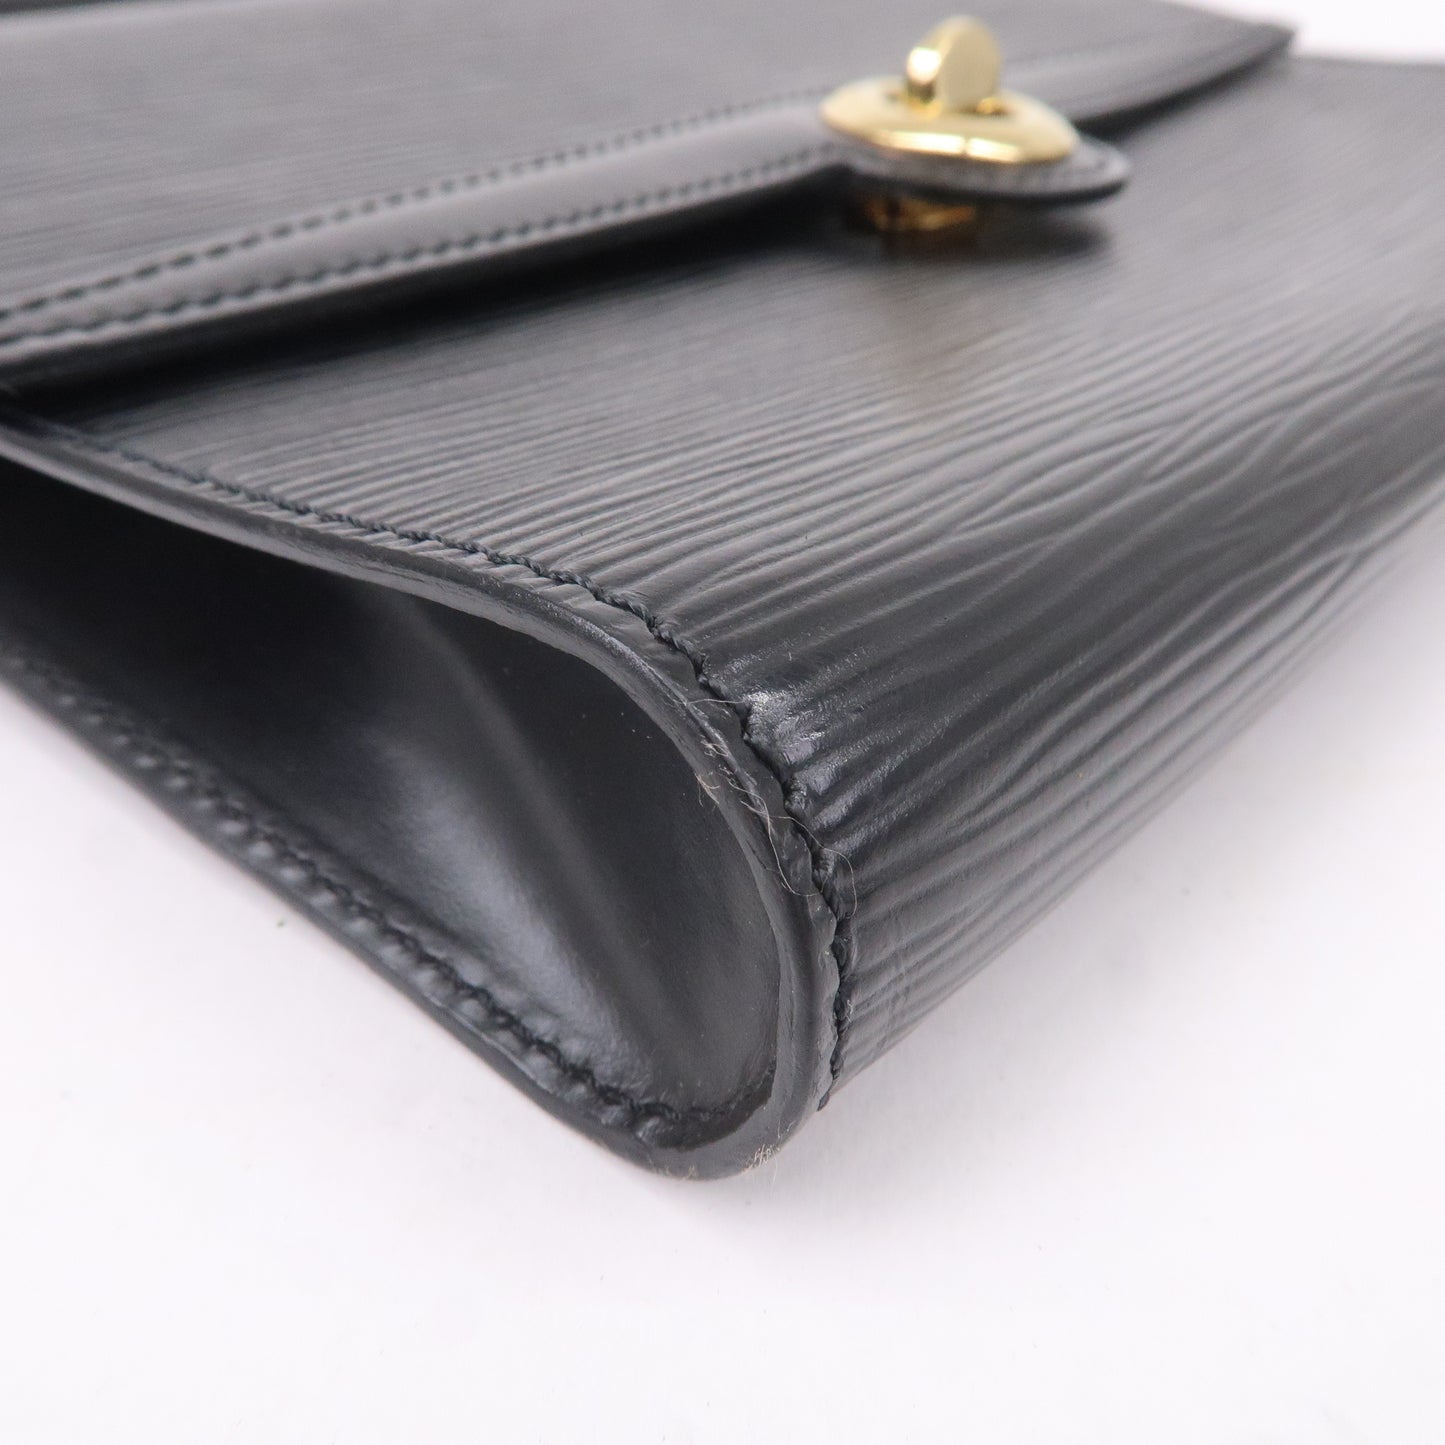 Louis Vuitton Epi Arche Noir Black Shoulder Bag Cross Body M52572